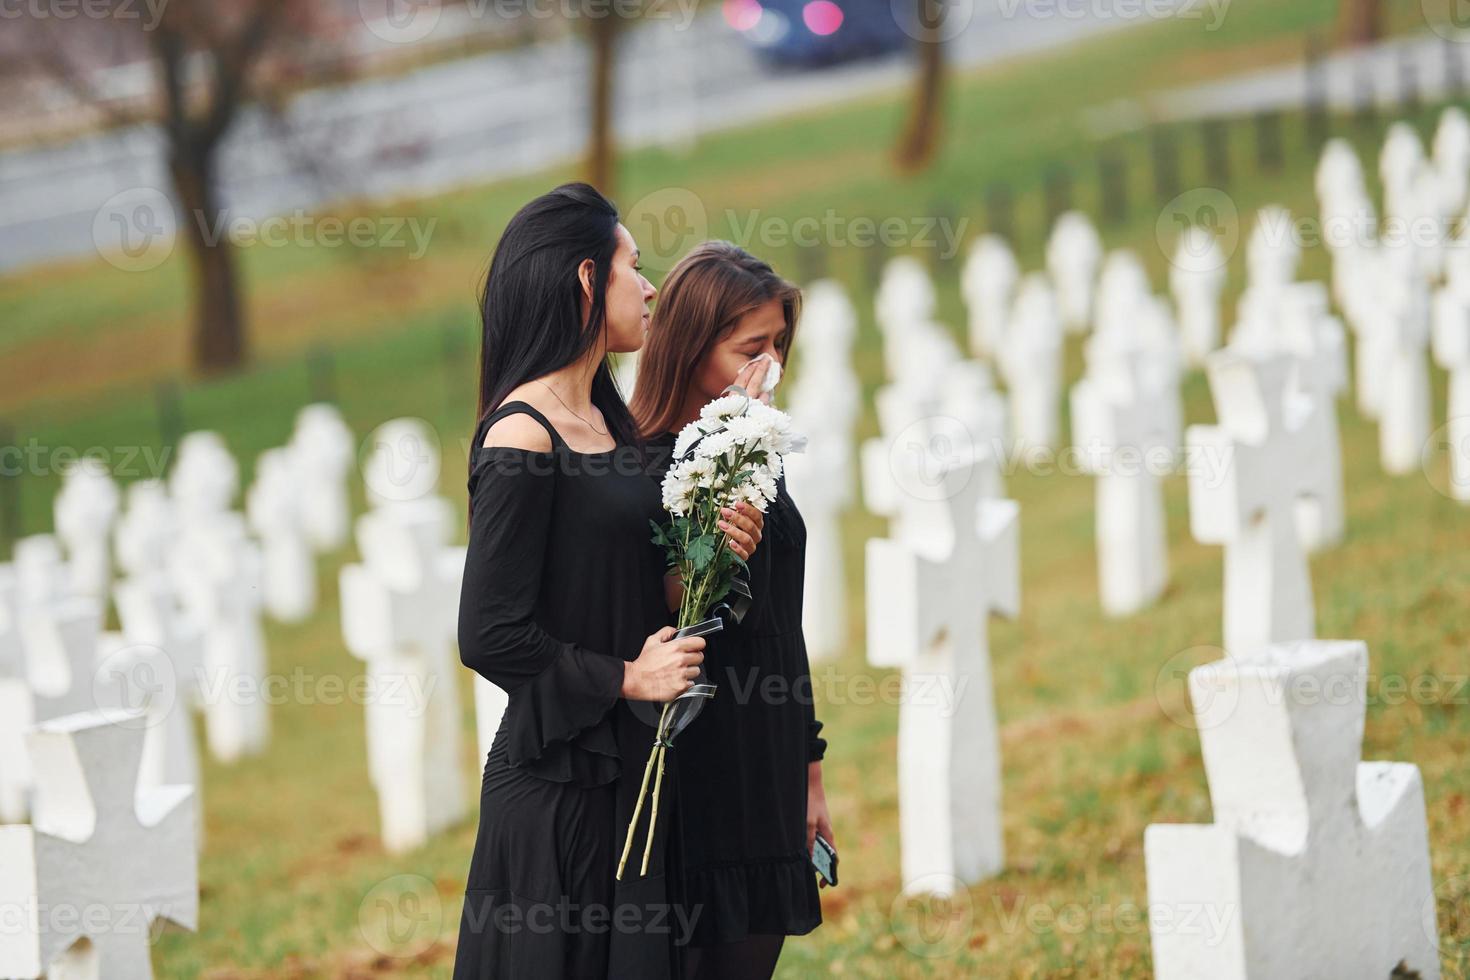 sostiene flores. dos mujeres jóvenes vestidas de negro visitando el cementerio con muchas cruces blancas. concepción del funeral y la muerte foto